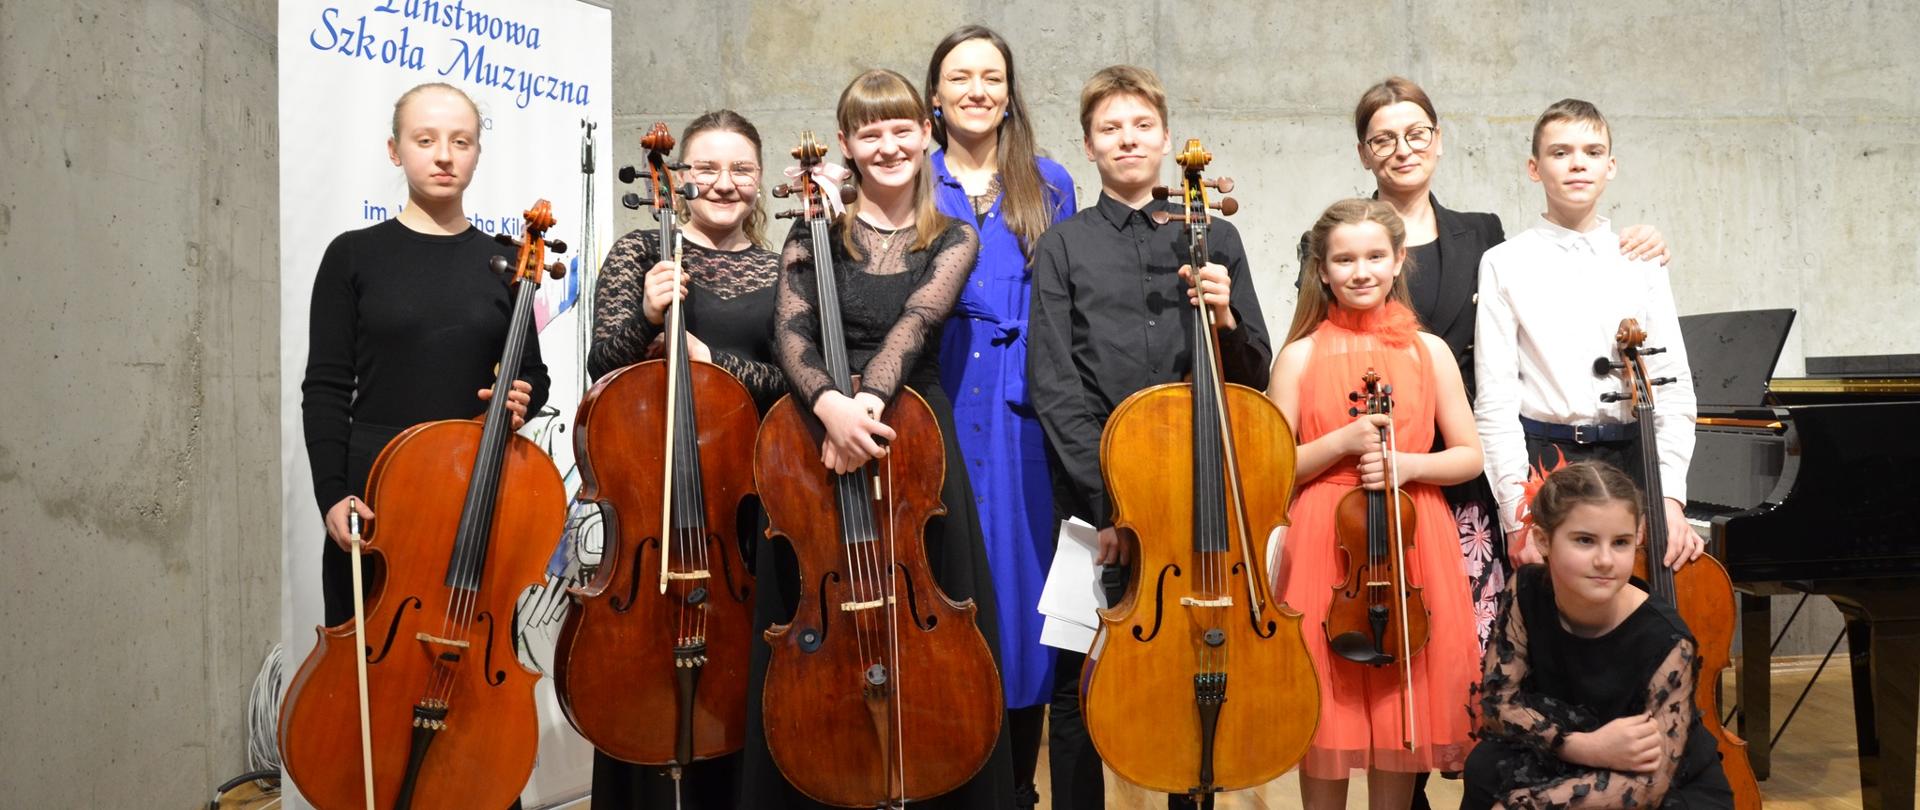 Grupa uczniów na scenie szkoły muzycznej, uczniowie trzymają wiolonczele i skrzypce, w tle baner promujący PSM w Wodzisławiu Śląskim